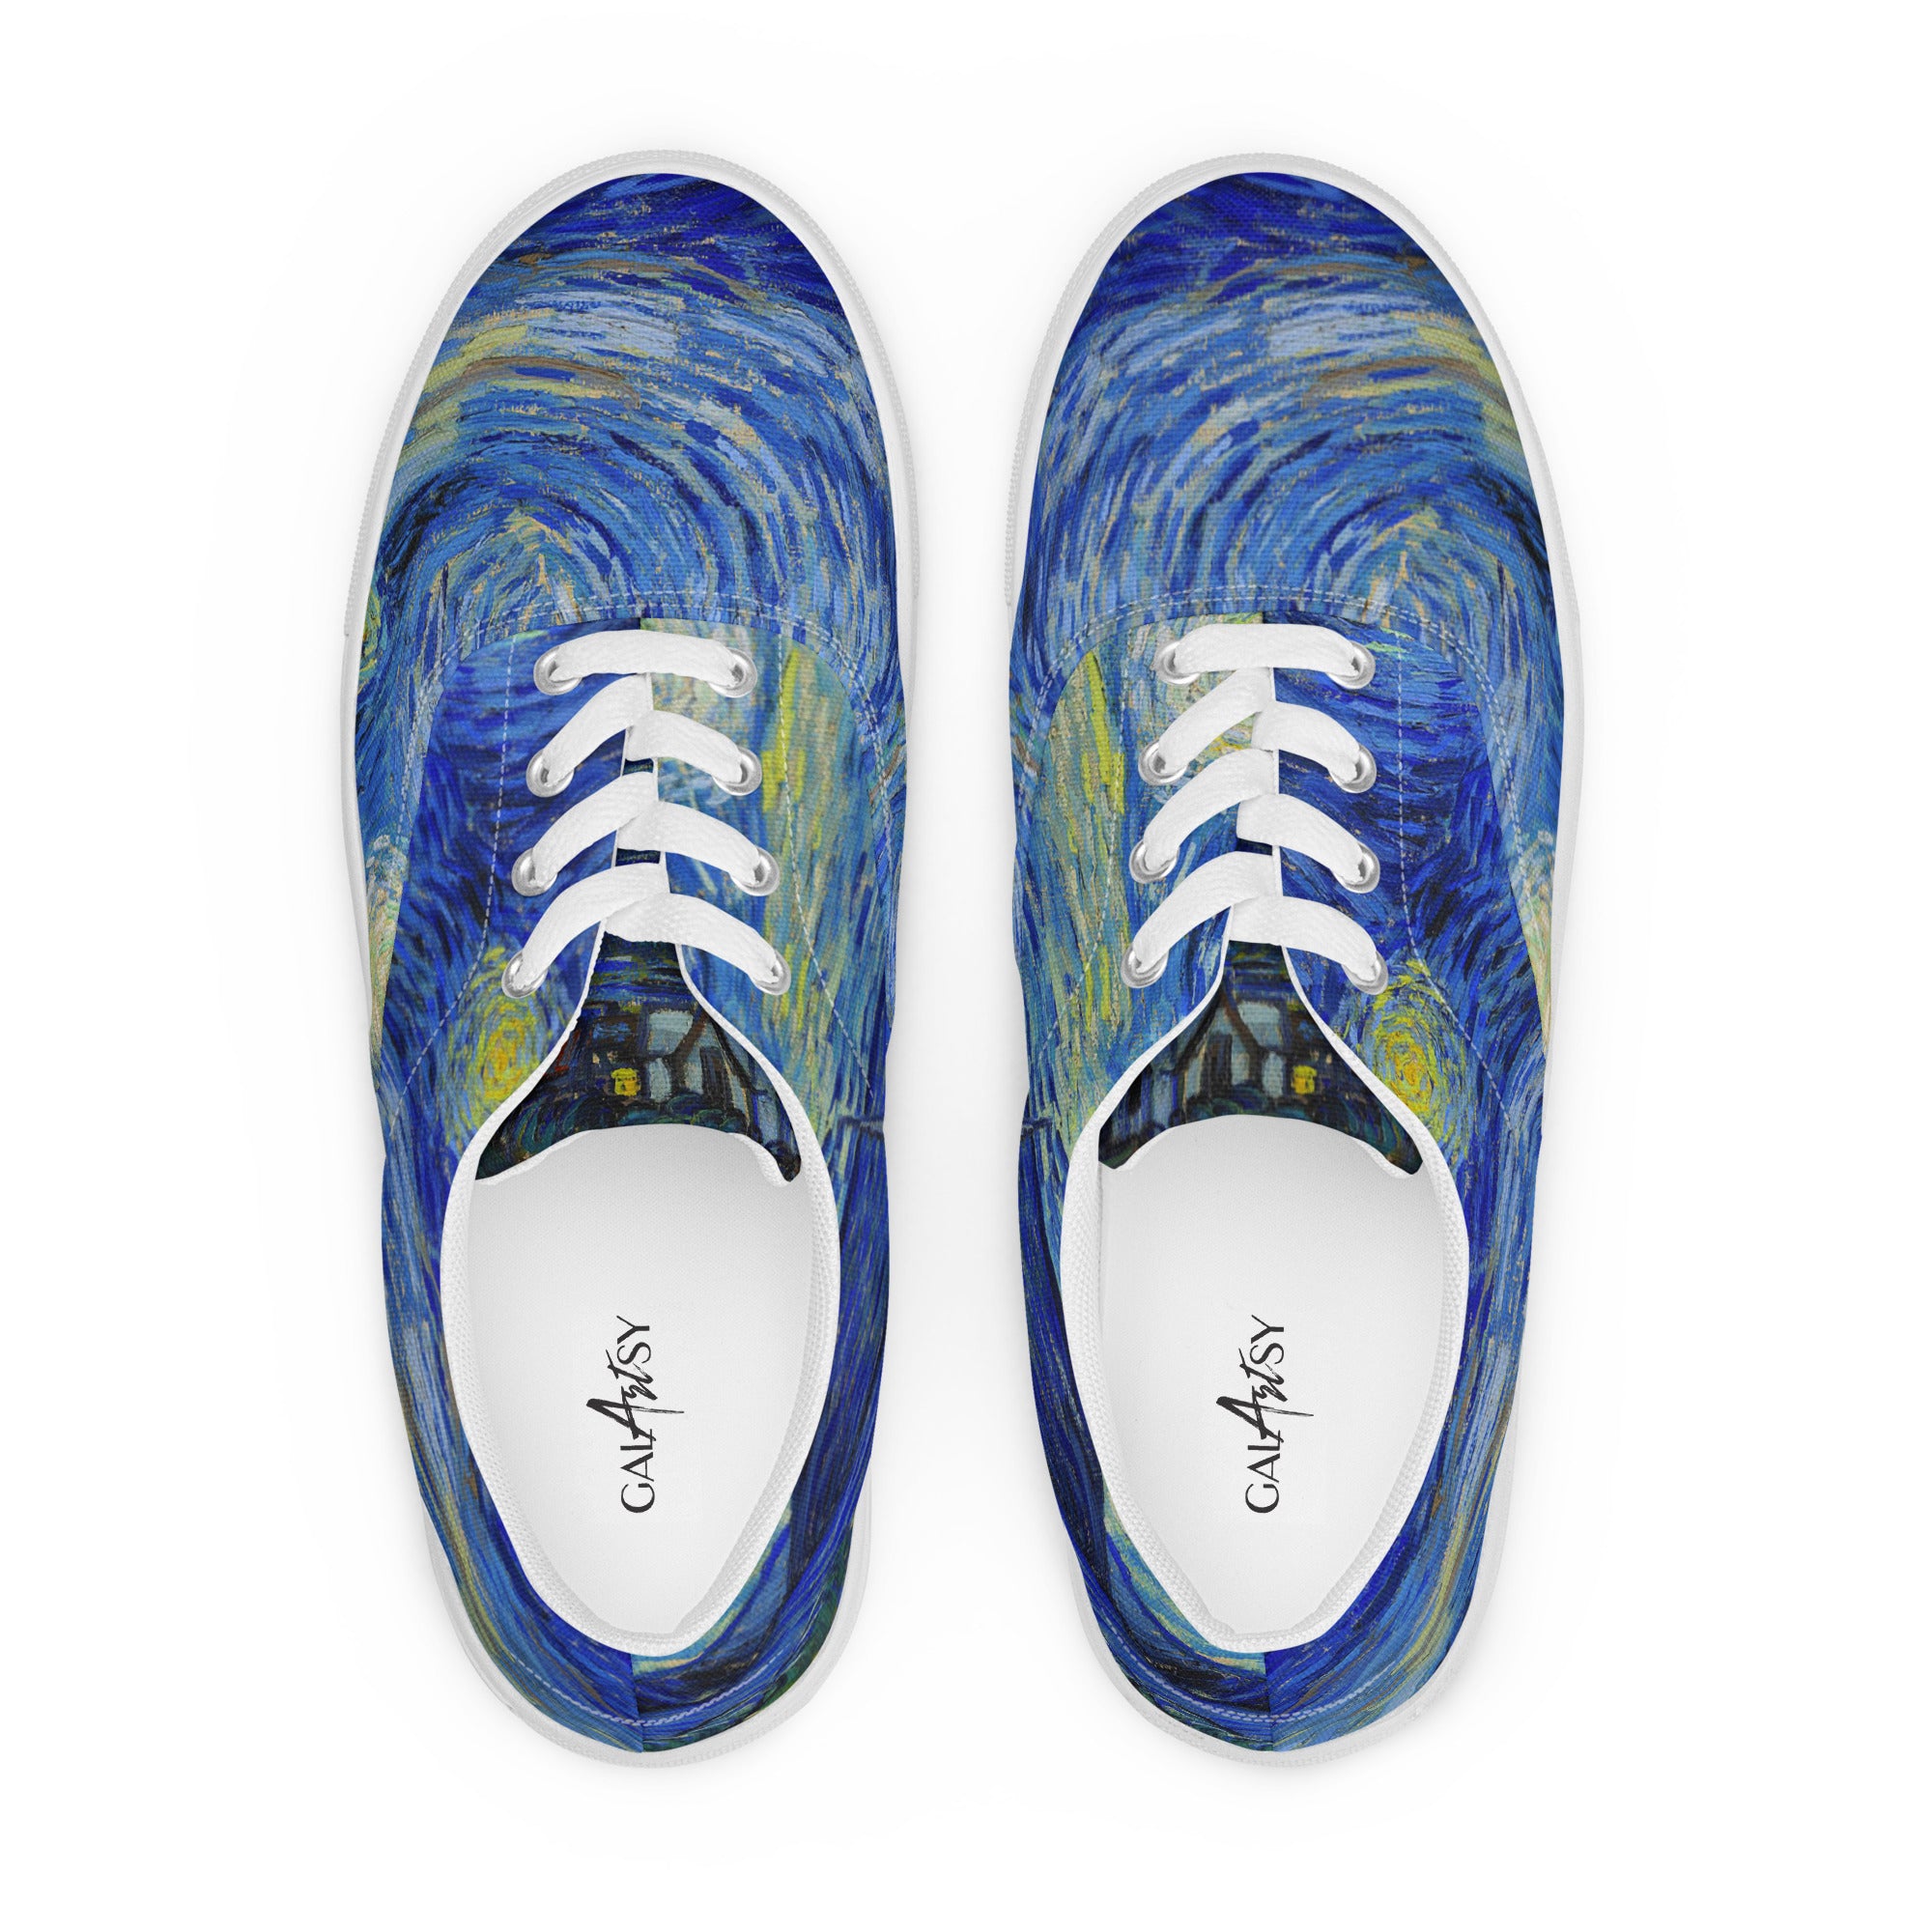 The Starry Night Van Gogh Sneakers – Galartsy